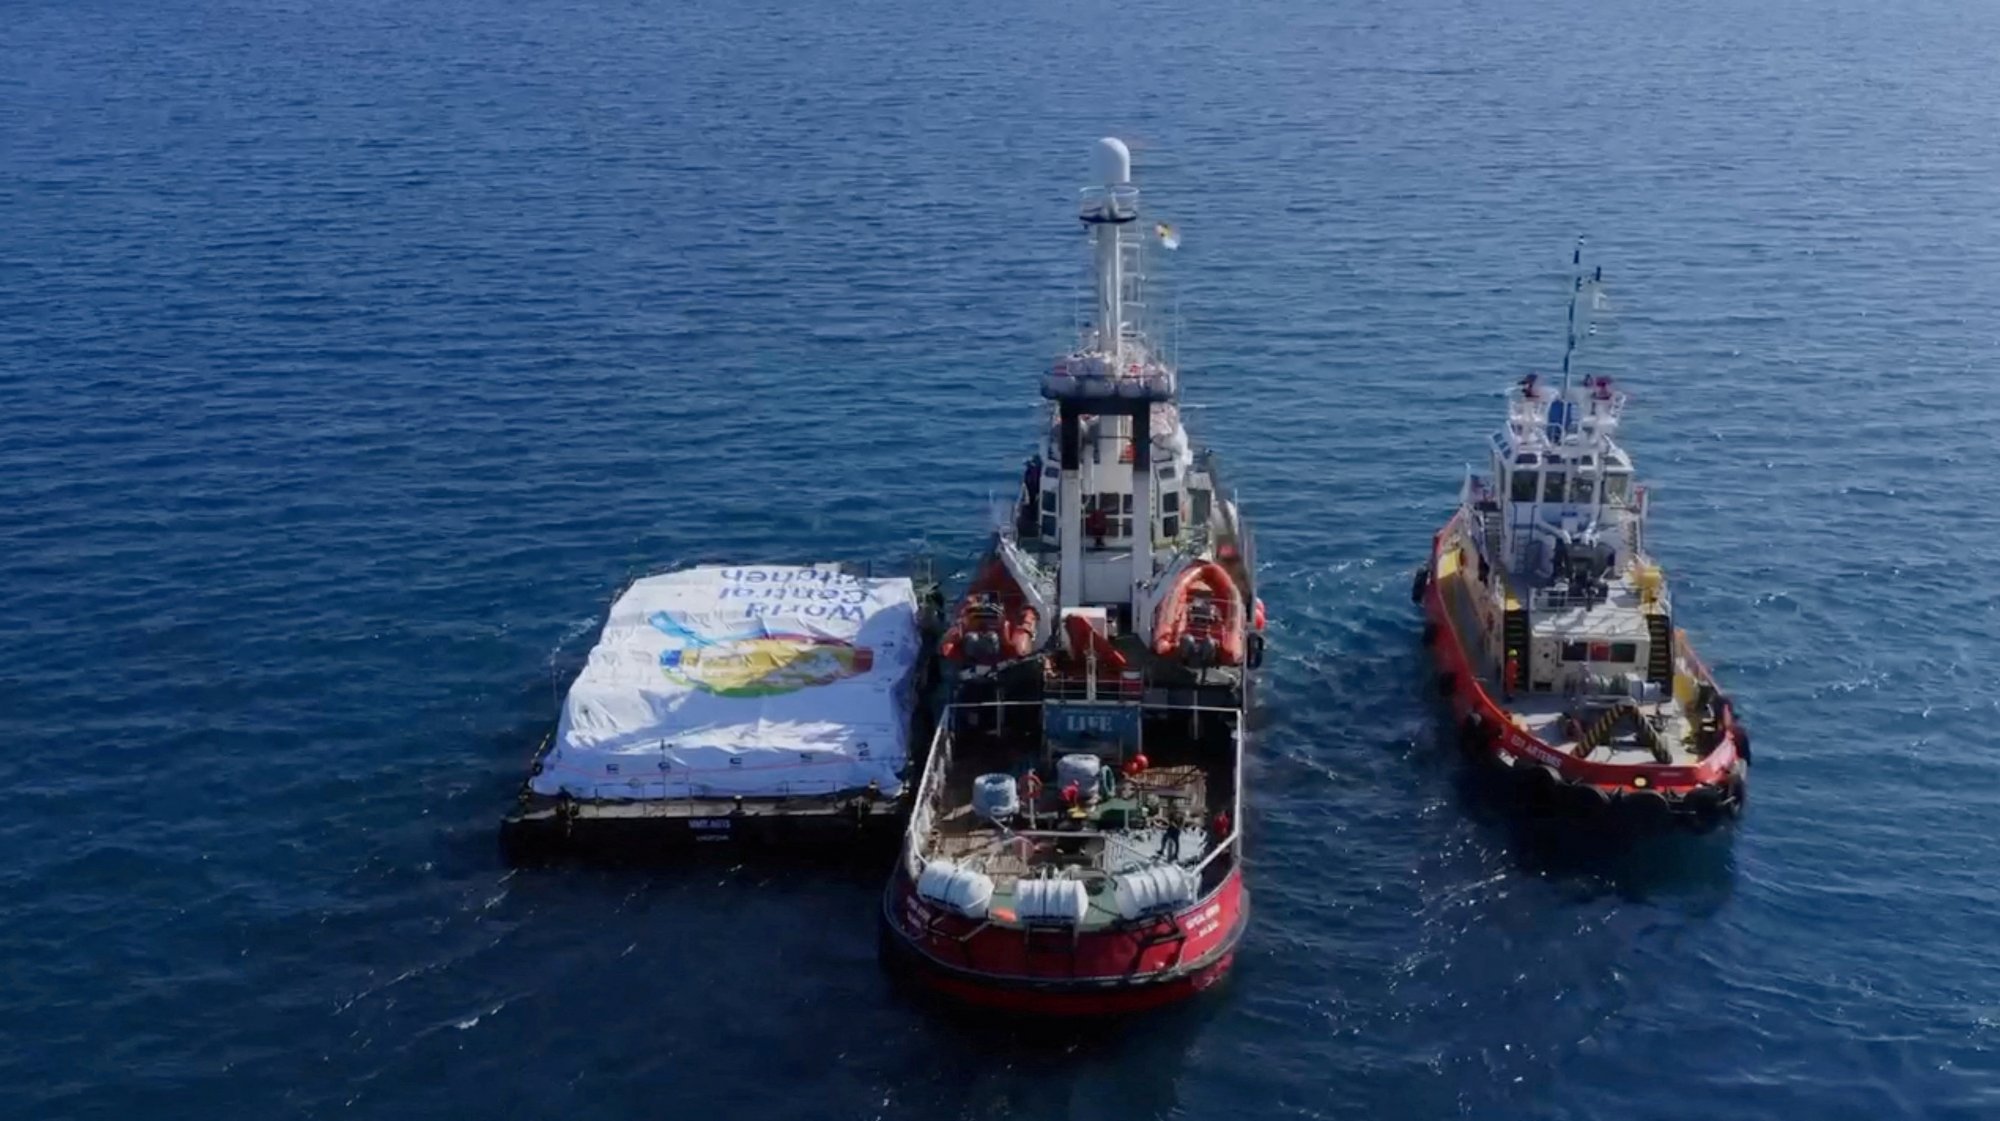 Γάζα: Ο θαλάσσιος διάδρομος της Κύπρου βοήθησε αλλά δεν αρκεί, λέει ο ΟΗΕ